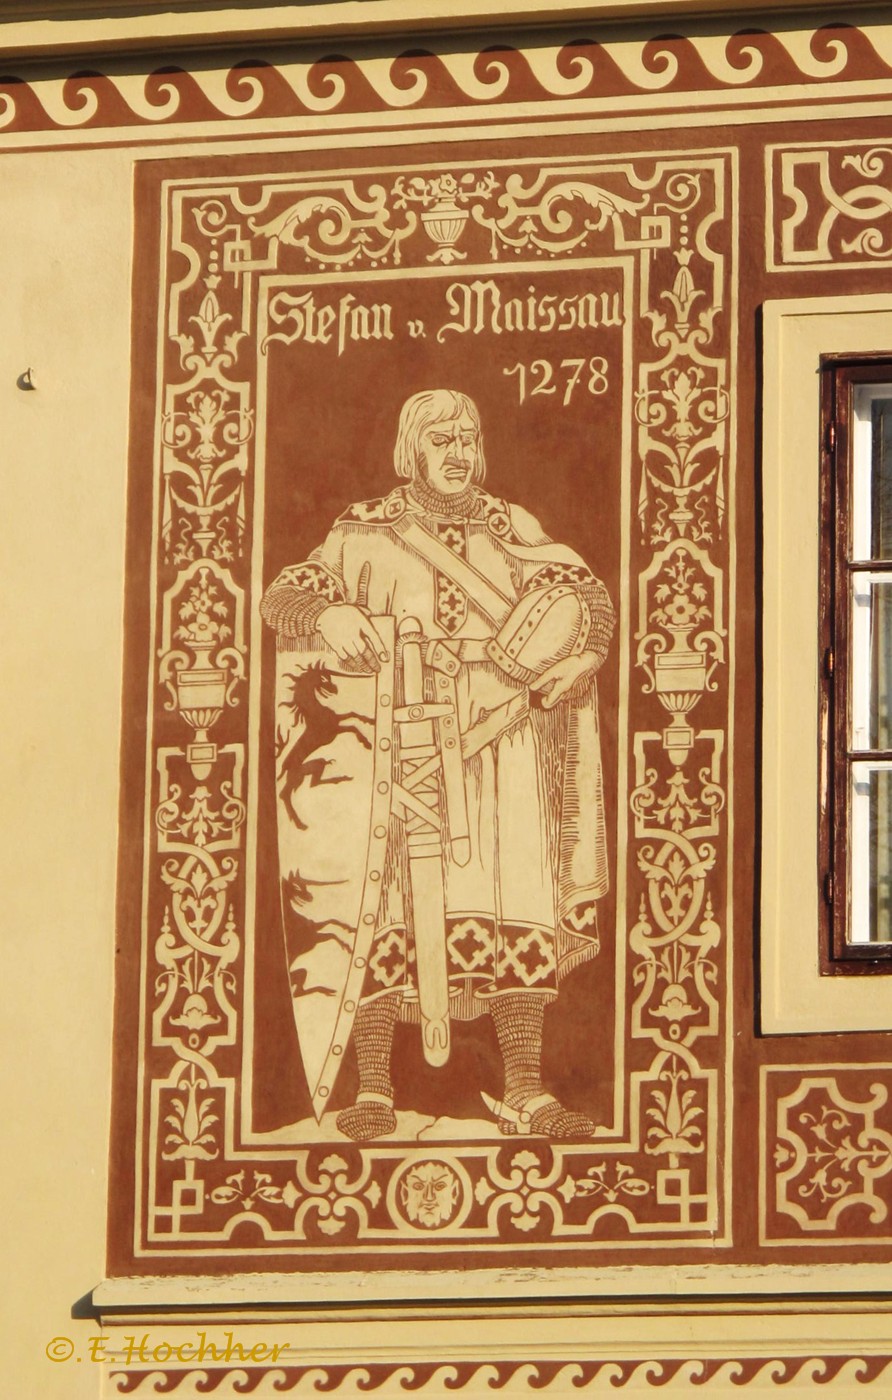 Stefan von Maissau